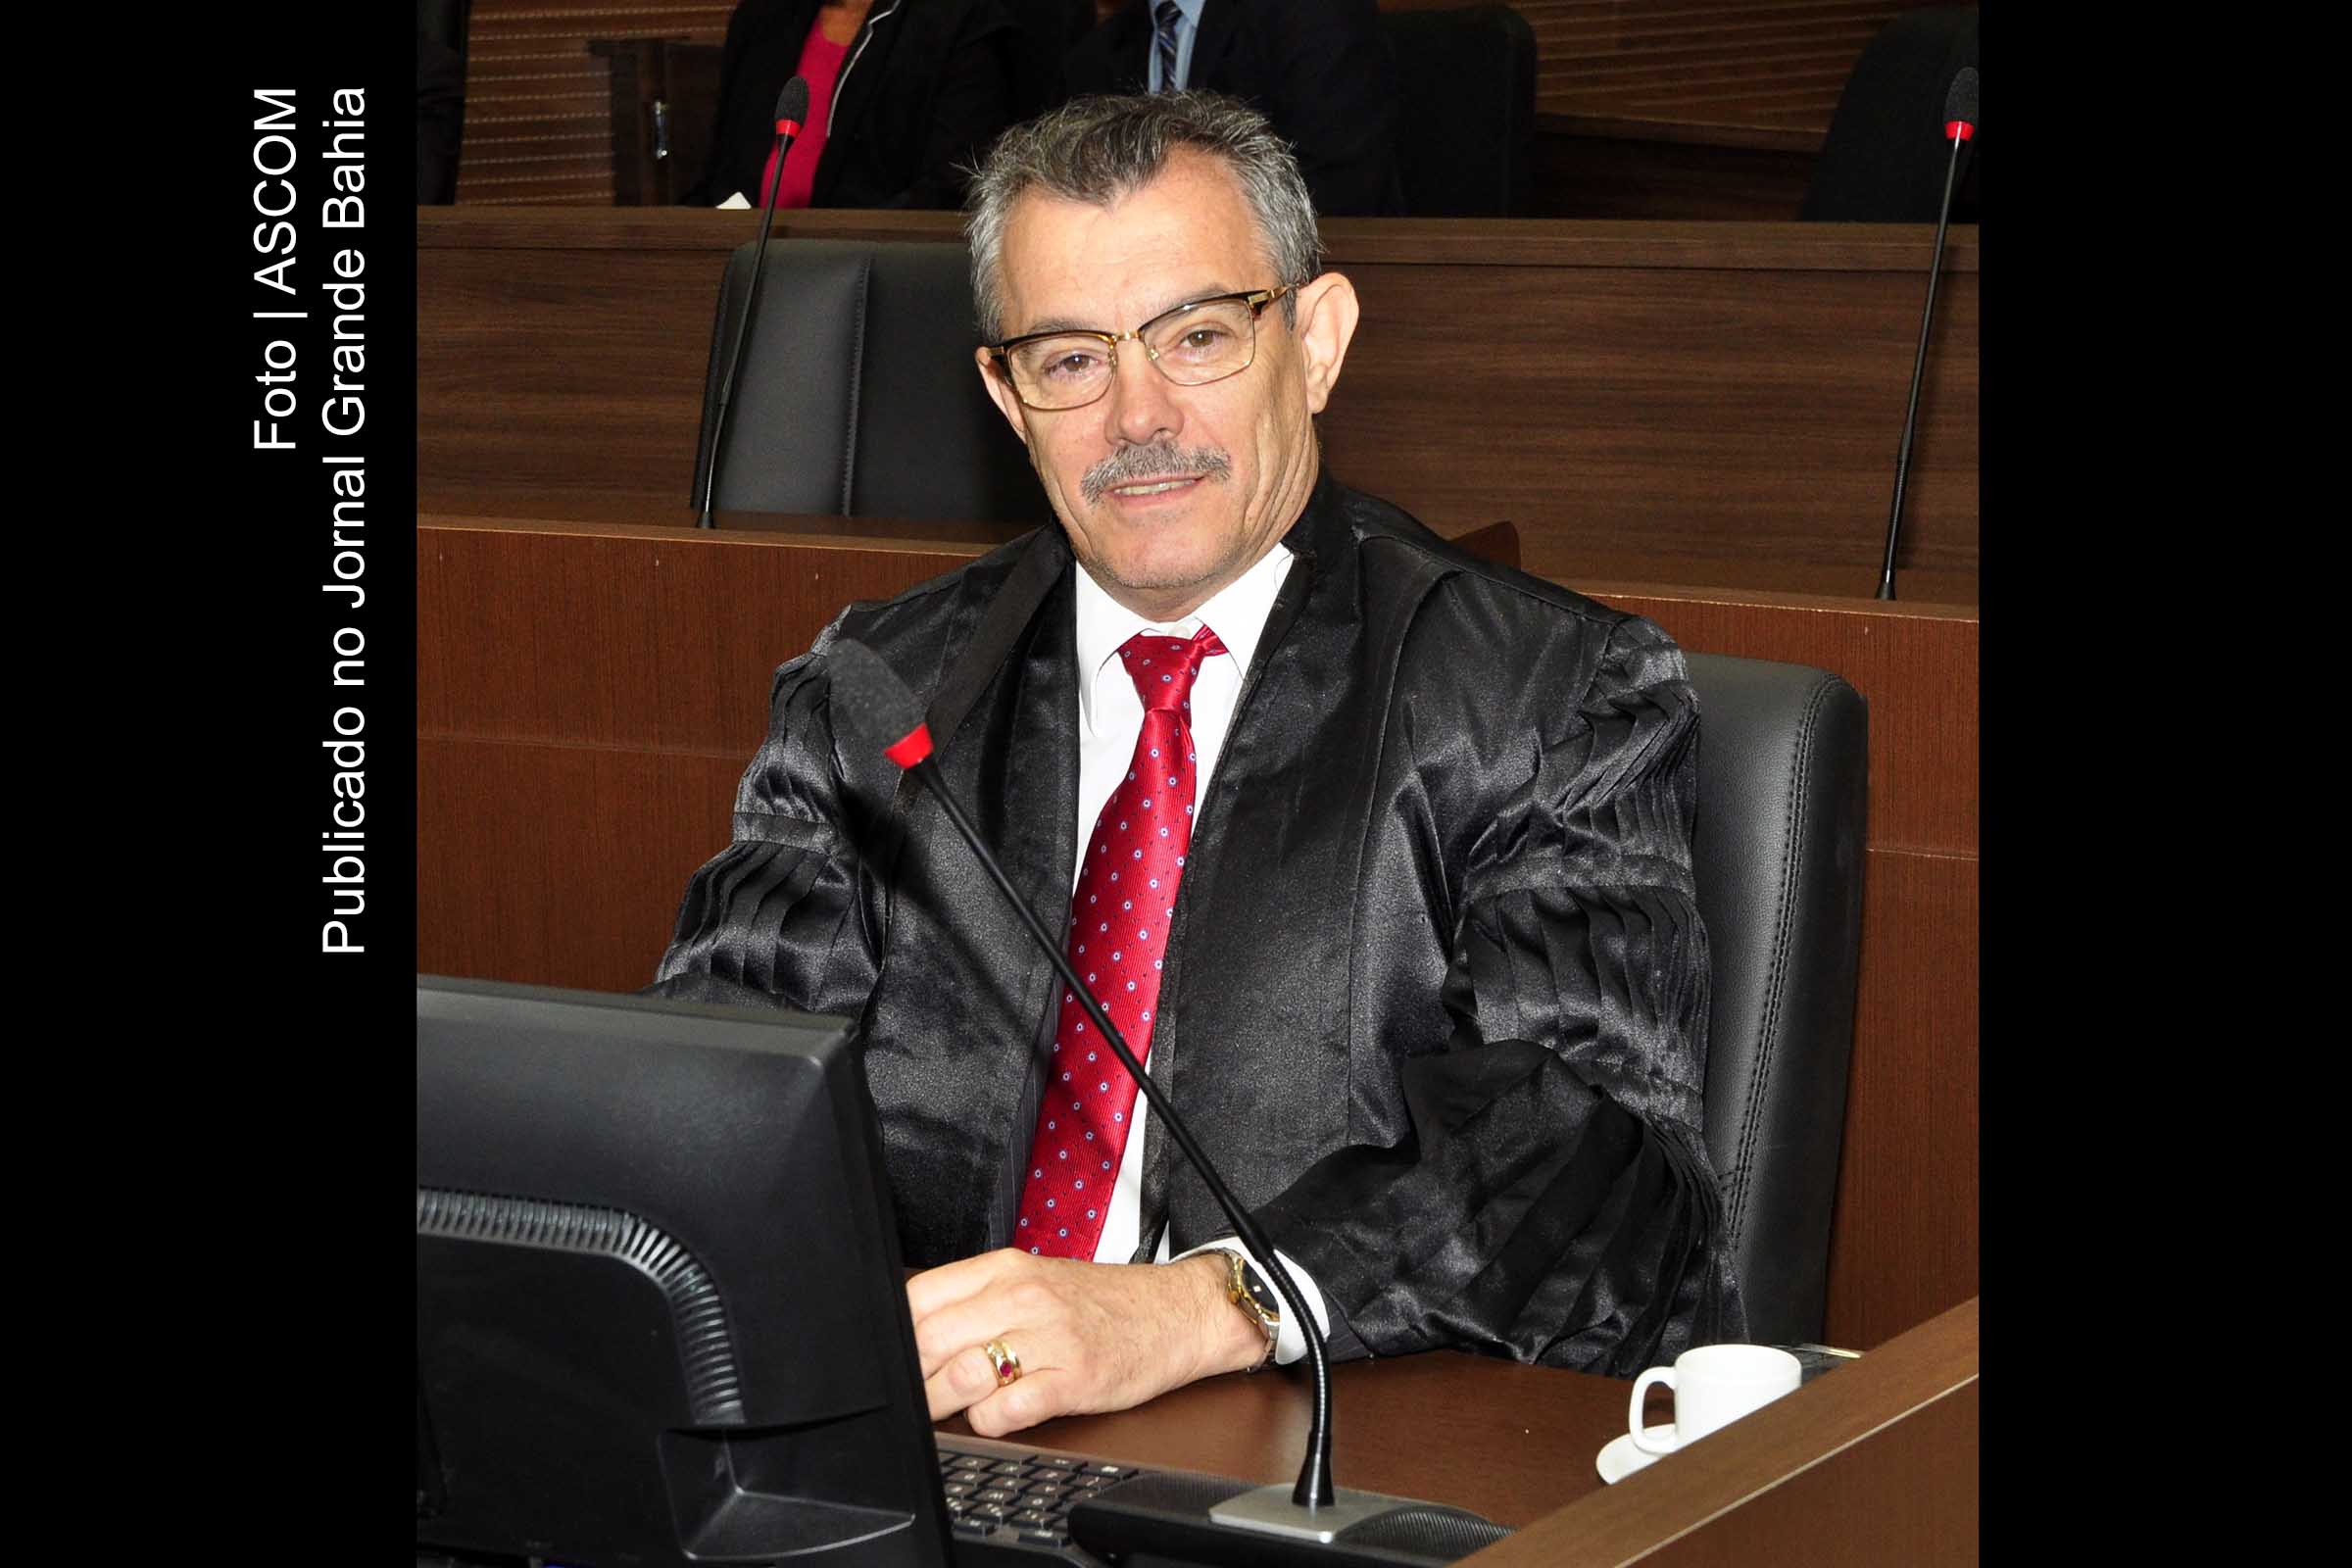 Desembargador Baltazar Miranda Saraiva presidiu sessão da 5ª Câmara Cível do TJBA, em que foram julgados 330 processos.